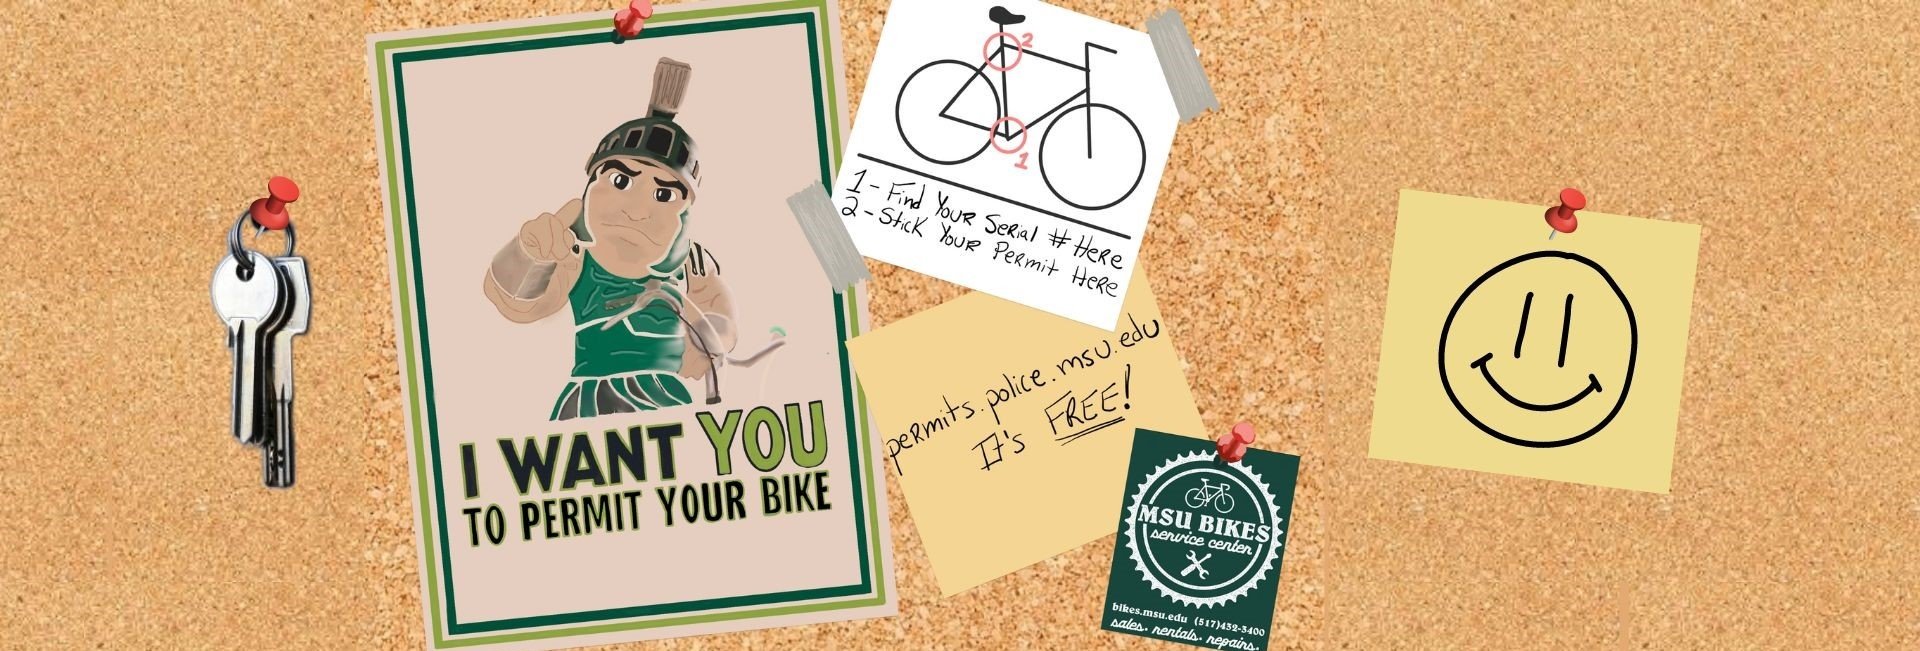 Permit Your Bike